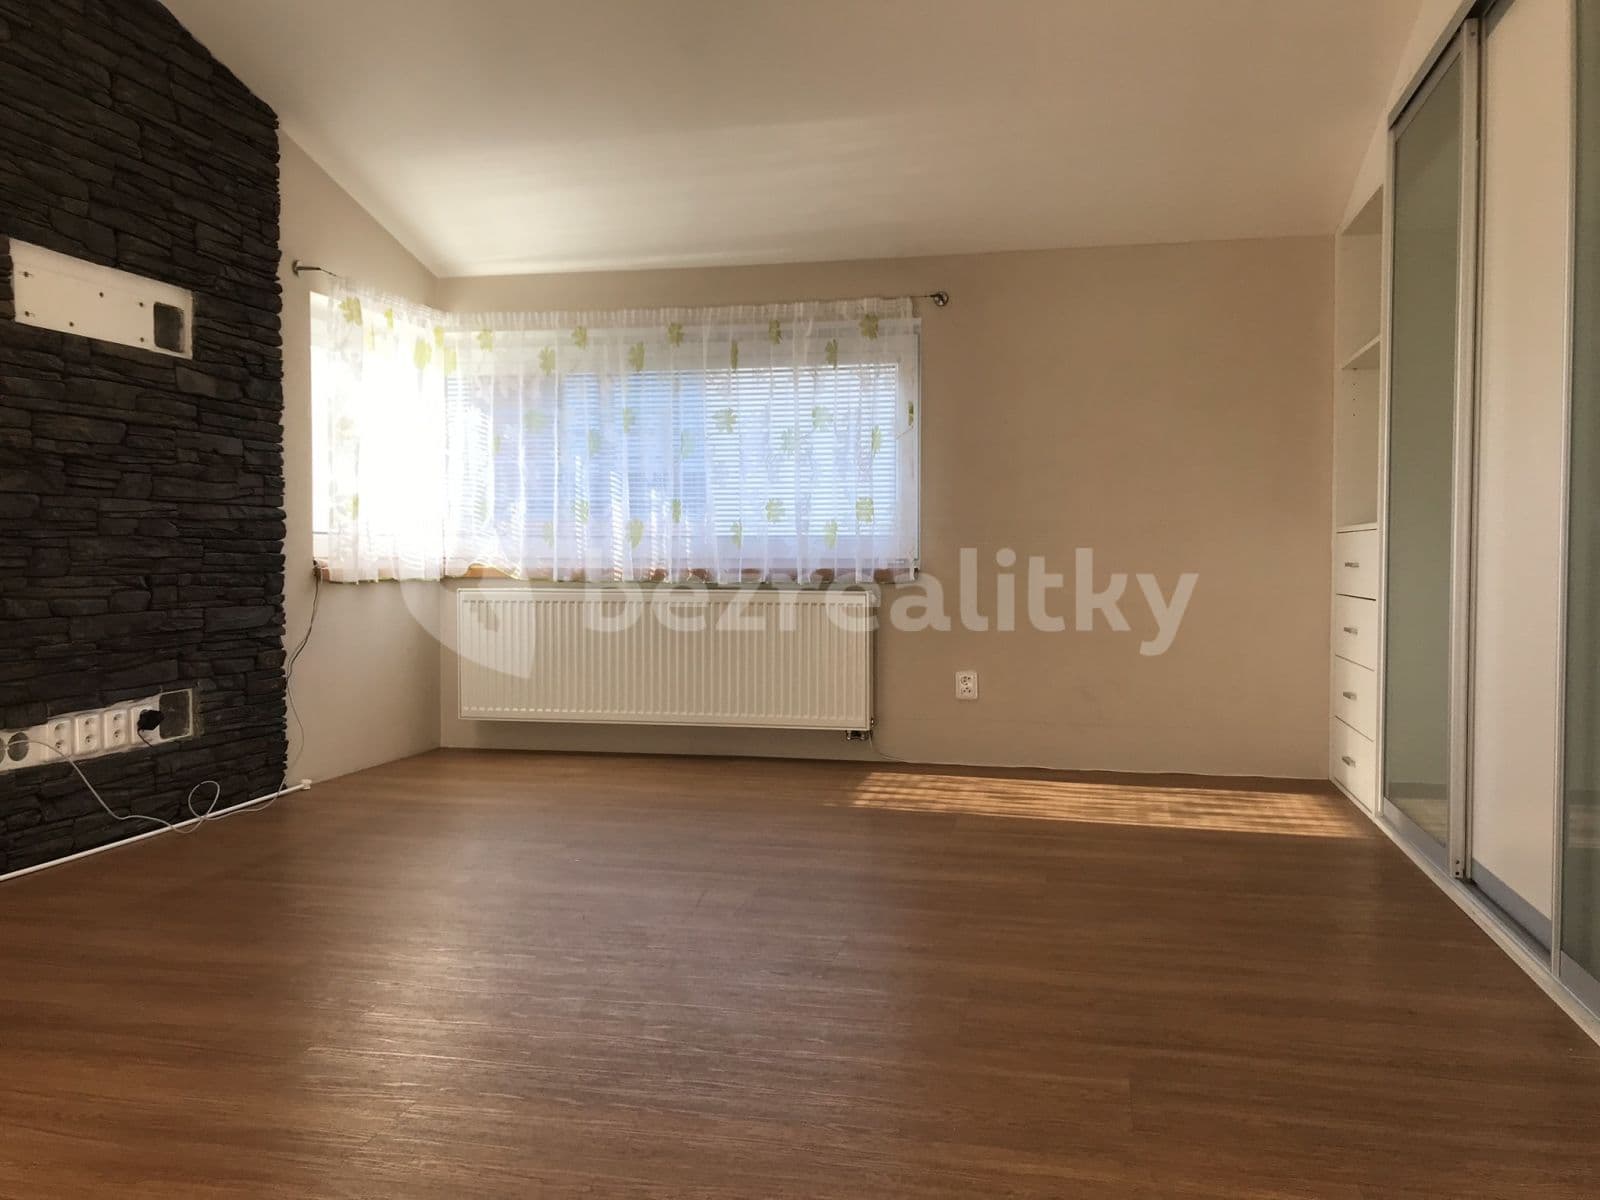 1 bedroom with open-plan kitchen flat to rent, 57 m², K Vrbičkám, Moravany, Jihomoravský Region